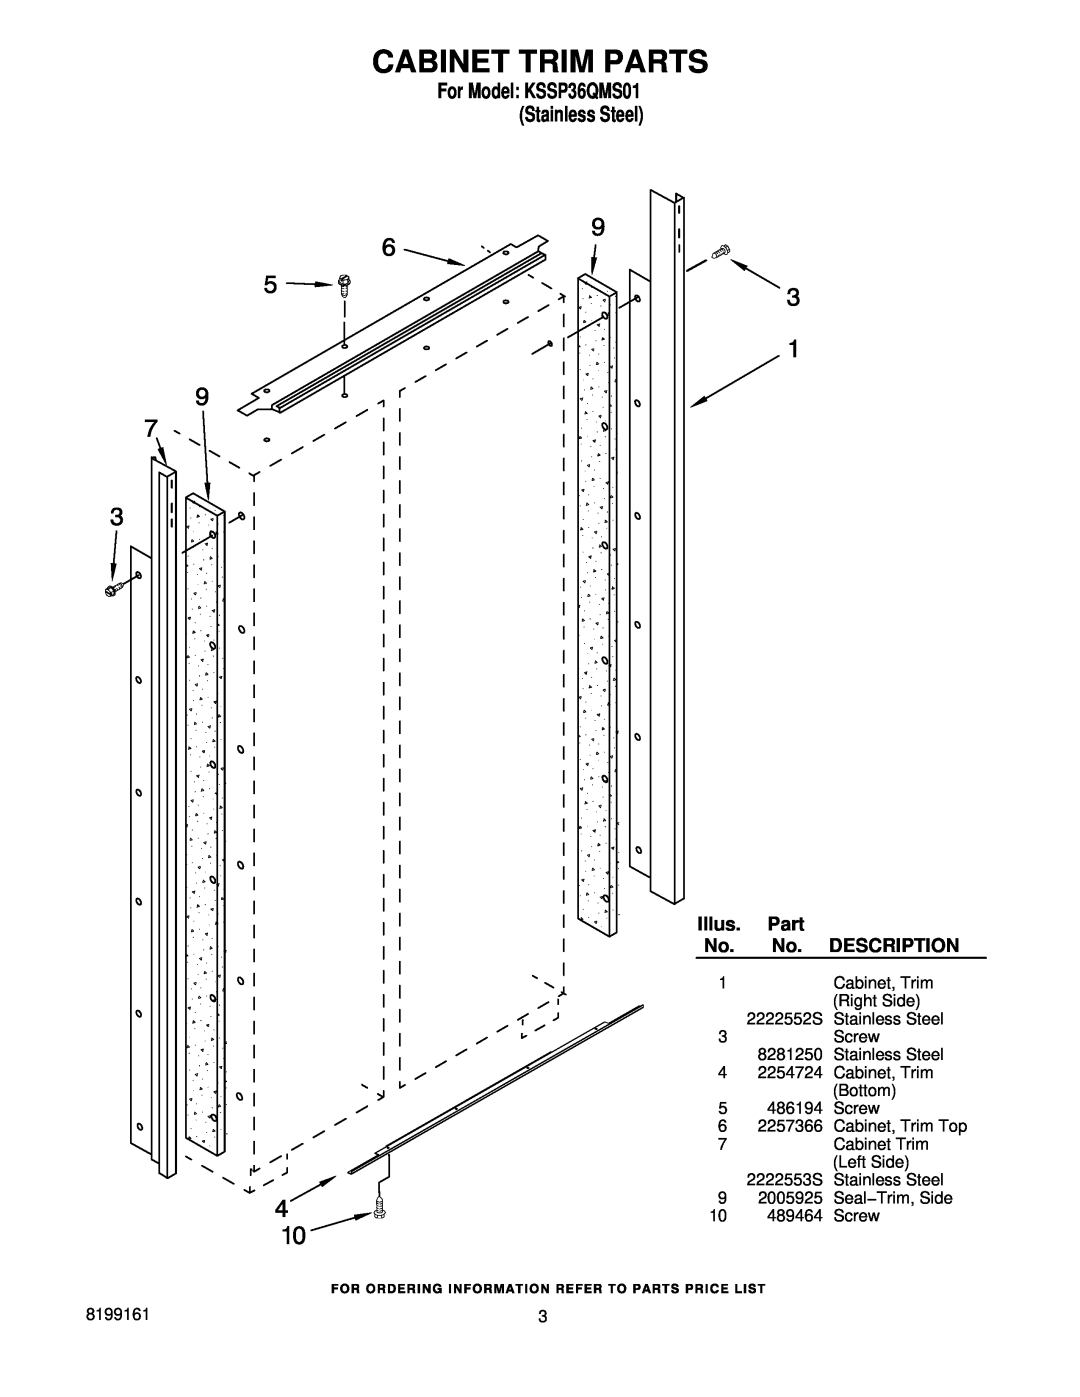 KitchenAid manual Cabinet Trim Parts, For Model KSSP36QMS01 Stainless Steel, Illus, Description 